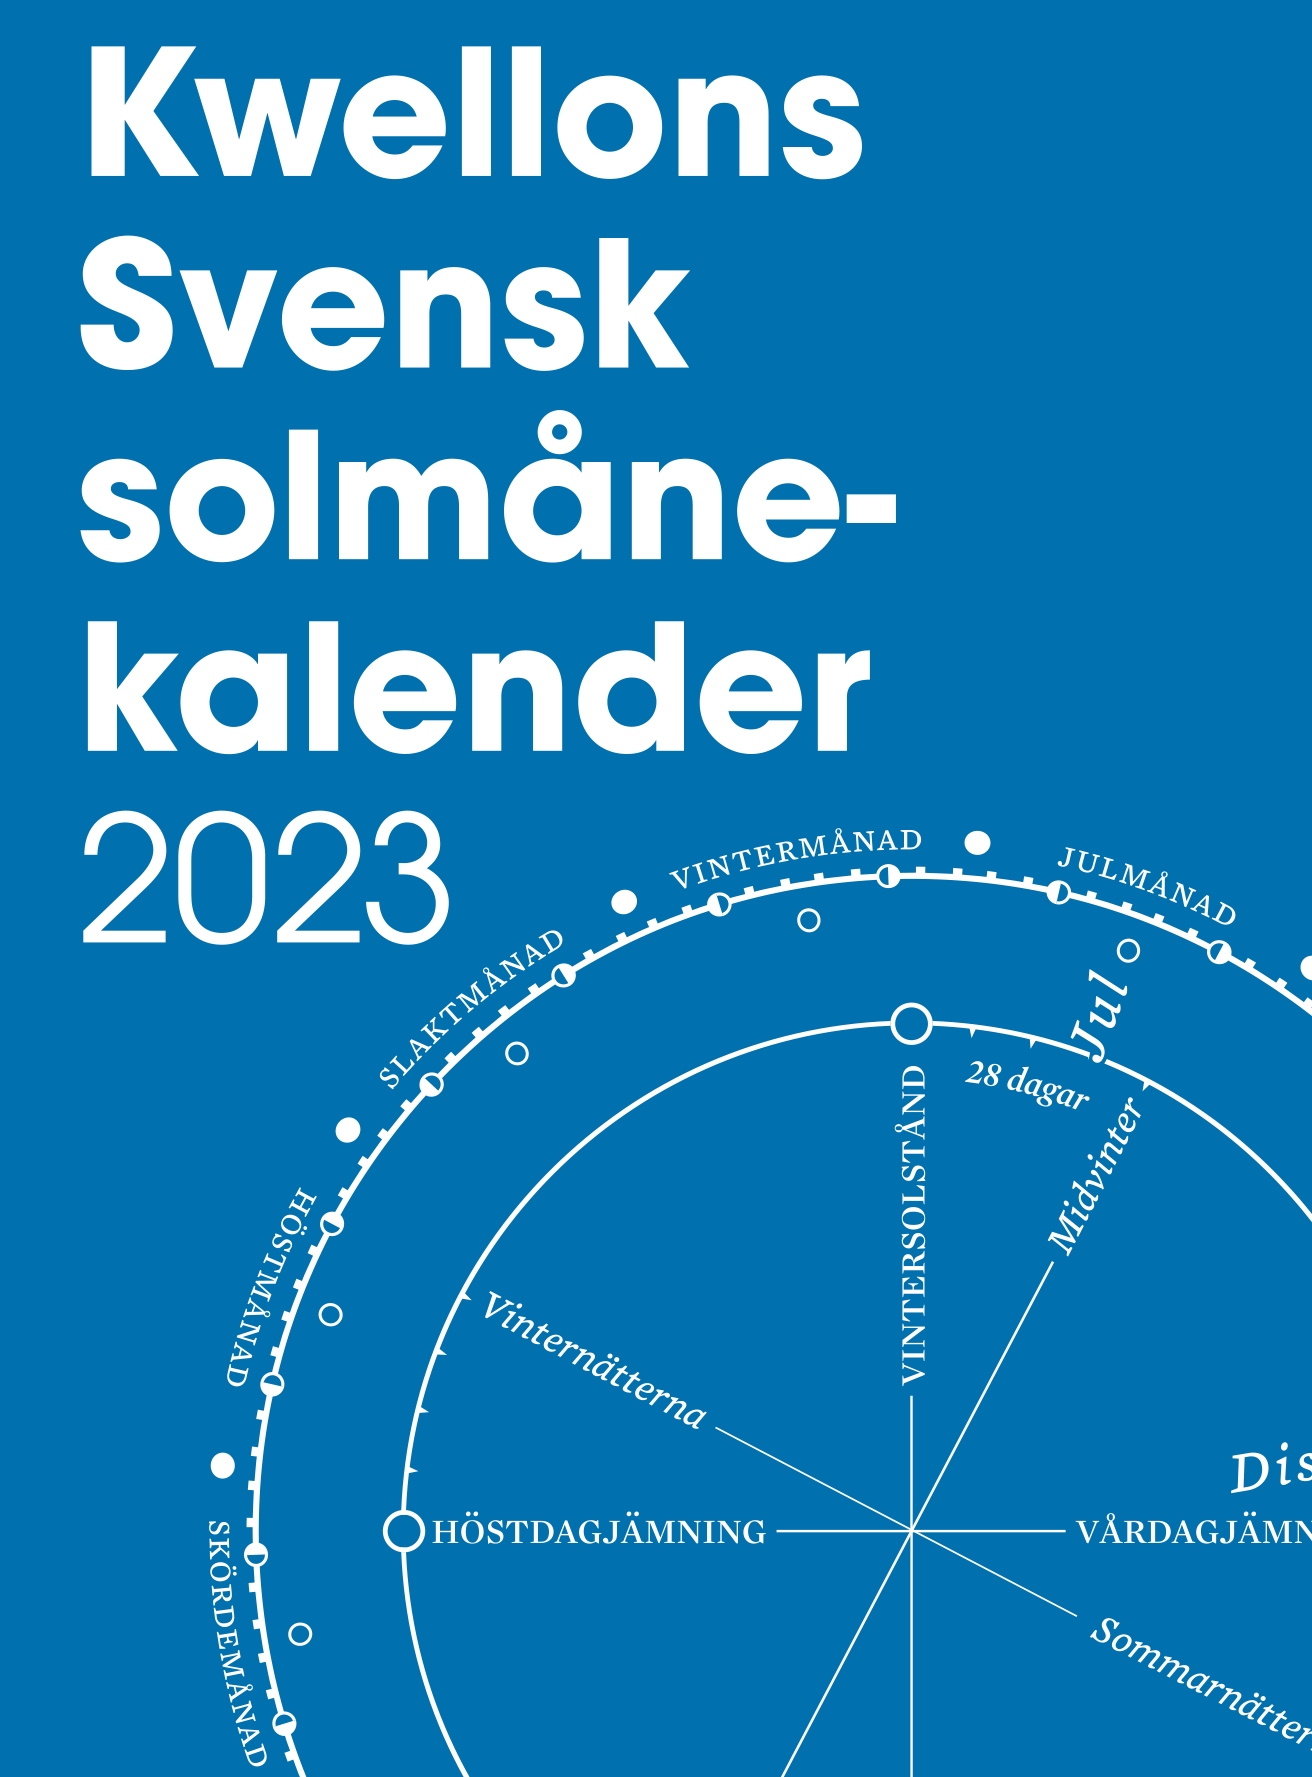 Kwellons svensk solmånekalender 2023